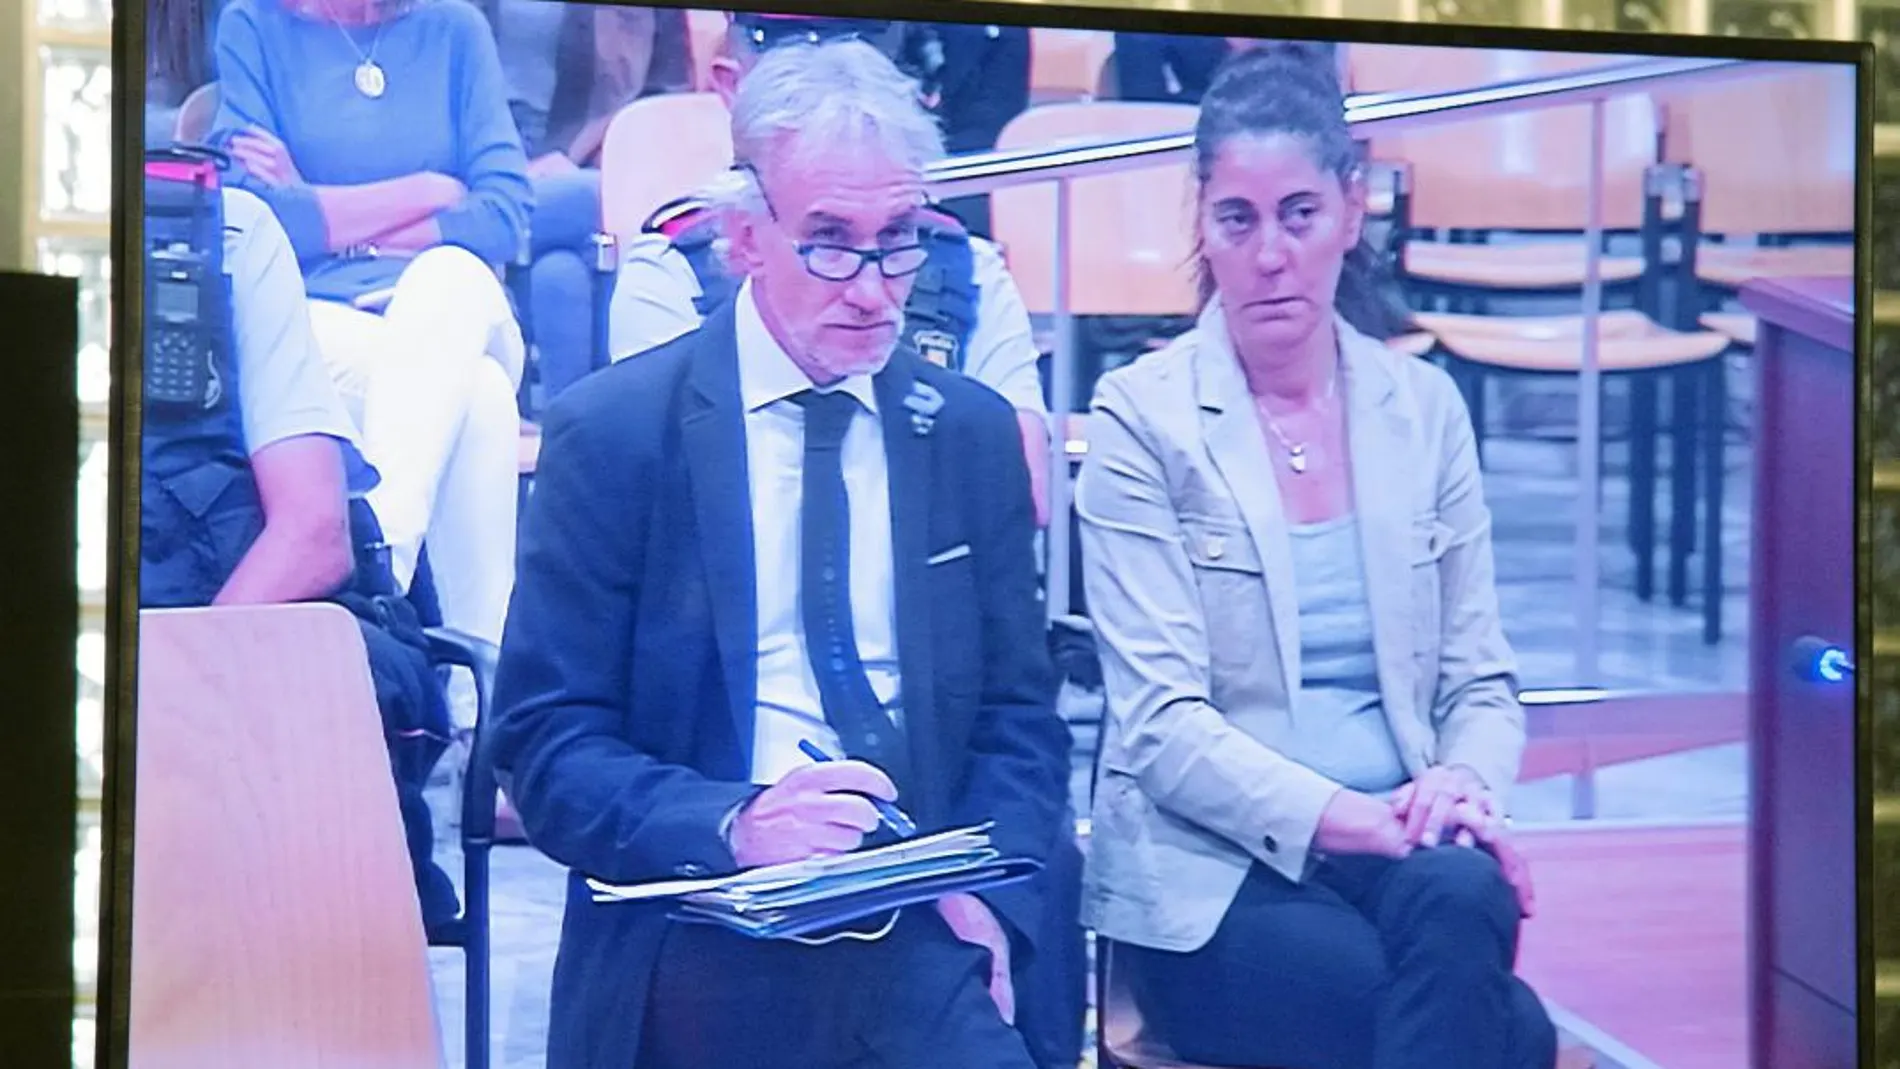 Fernando Blanco y Margarita Garau, los padres de Nadia, sentados ayer en el banquillo de la Audiencia de Lérida